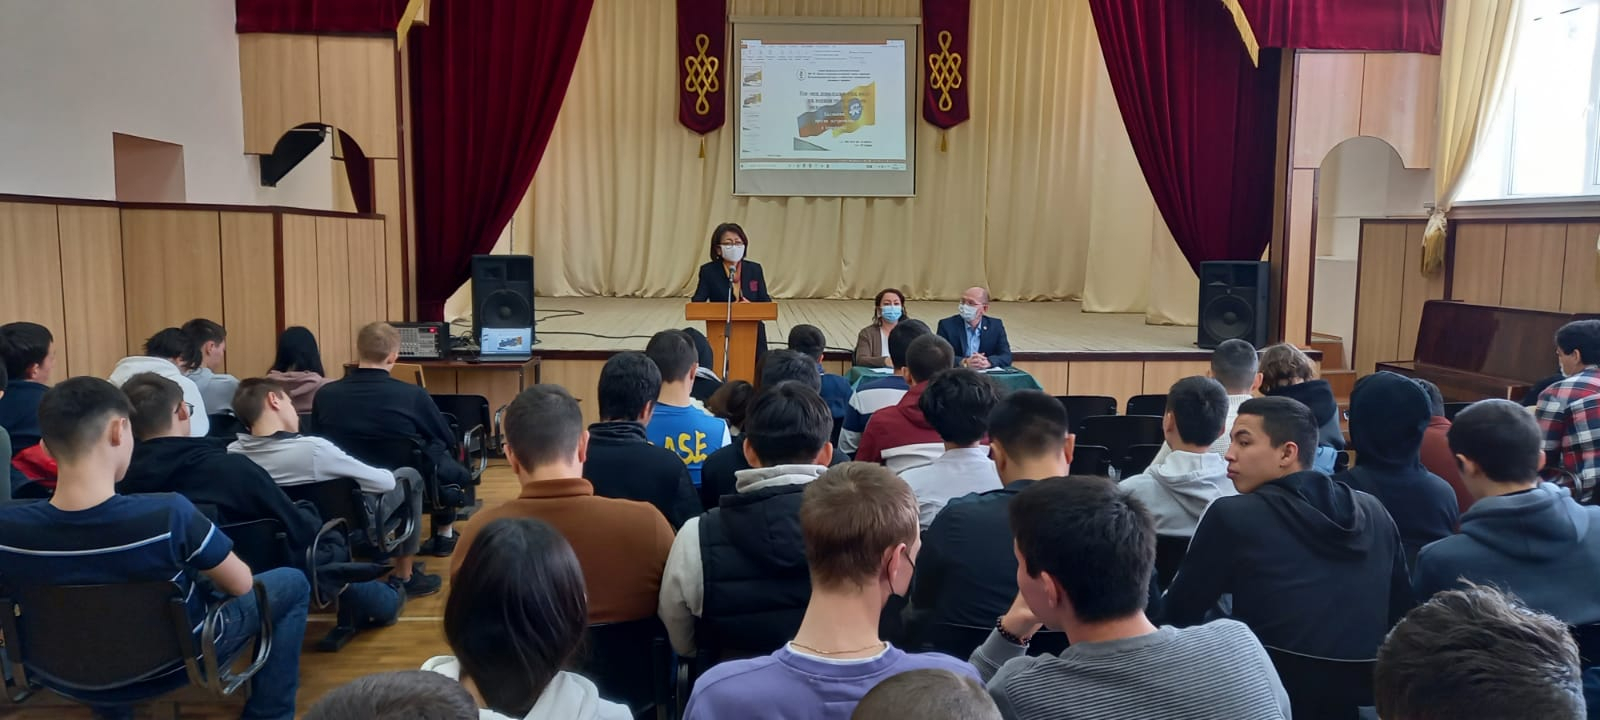 В Калмыкии проведены информационно-просветительские мероприятия по профилактике терроризма и экстремизма